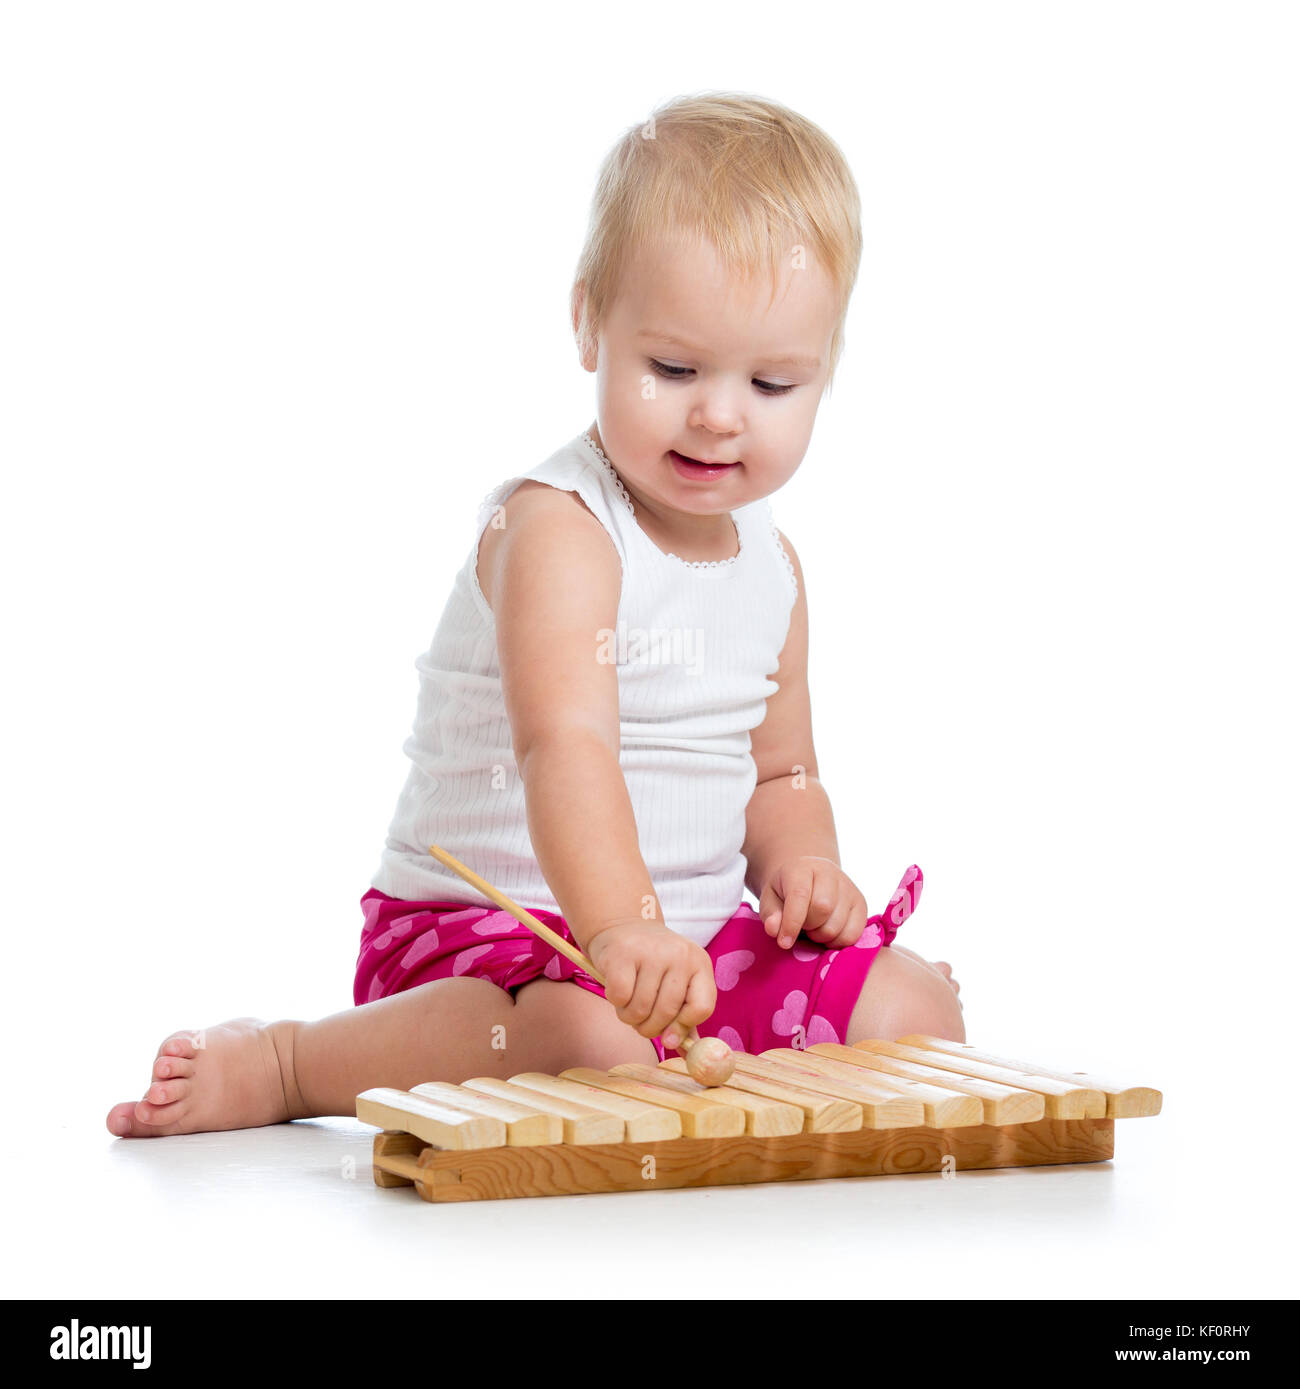 Bébé jouant le xylophone photo stock. Image du beauté - 32714620